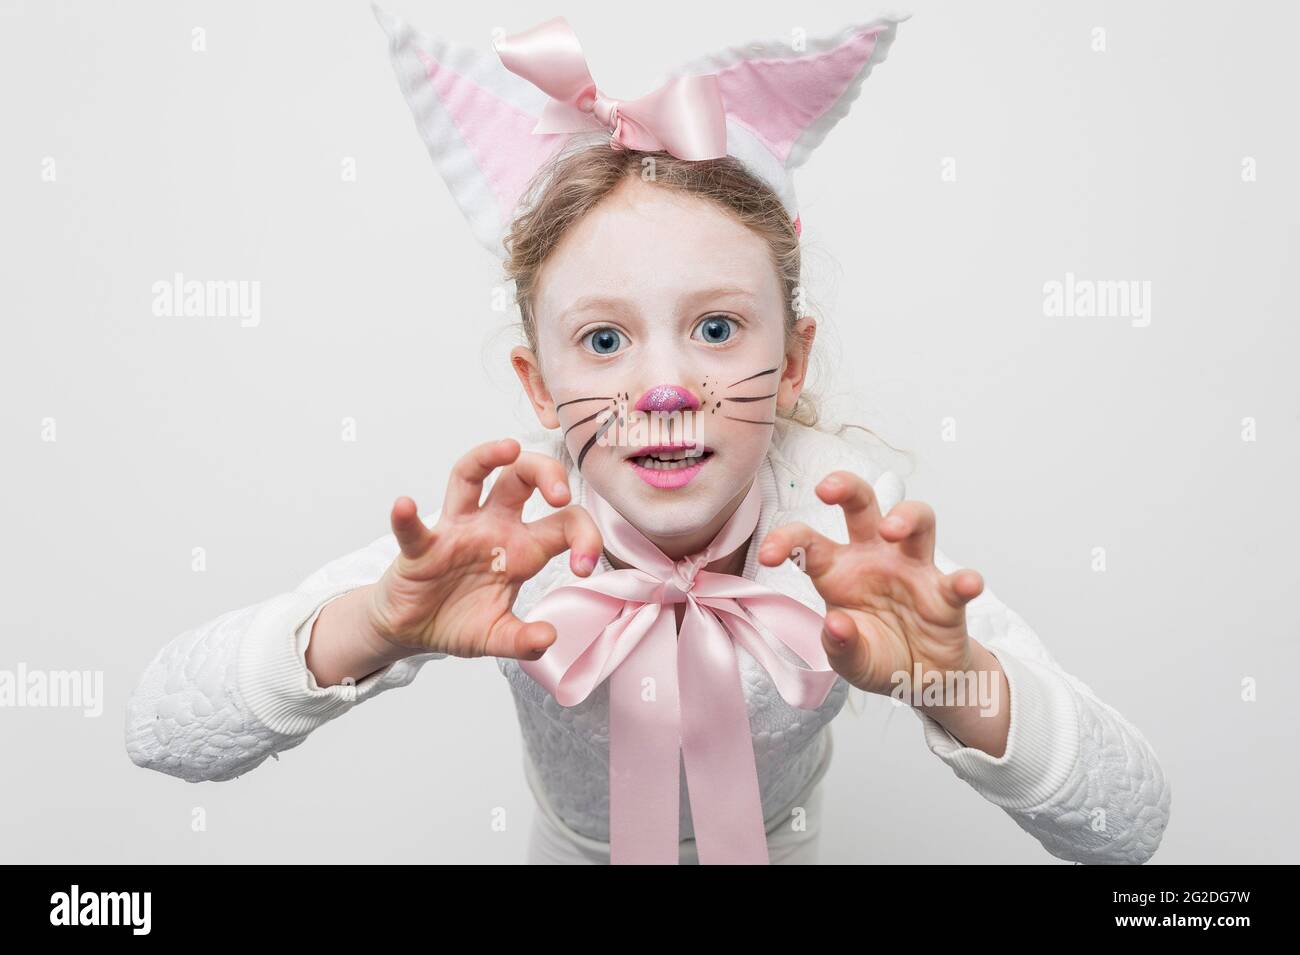 Bambini Bambine Bambini Easter Bunny Rabbit Giornata Mondiale del Libro Costume Outfit 